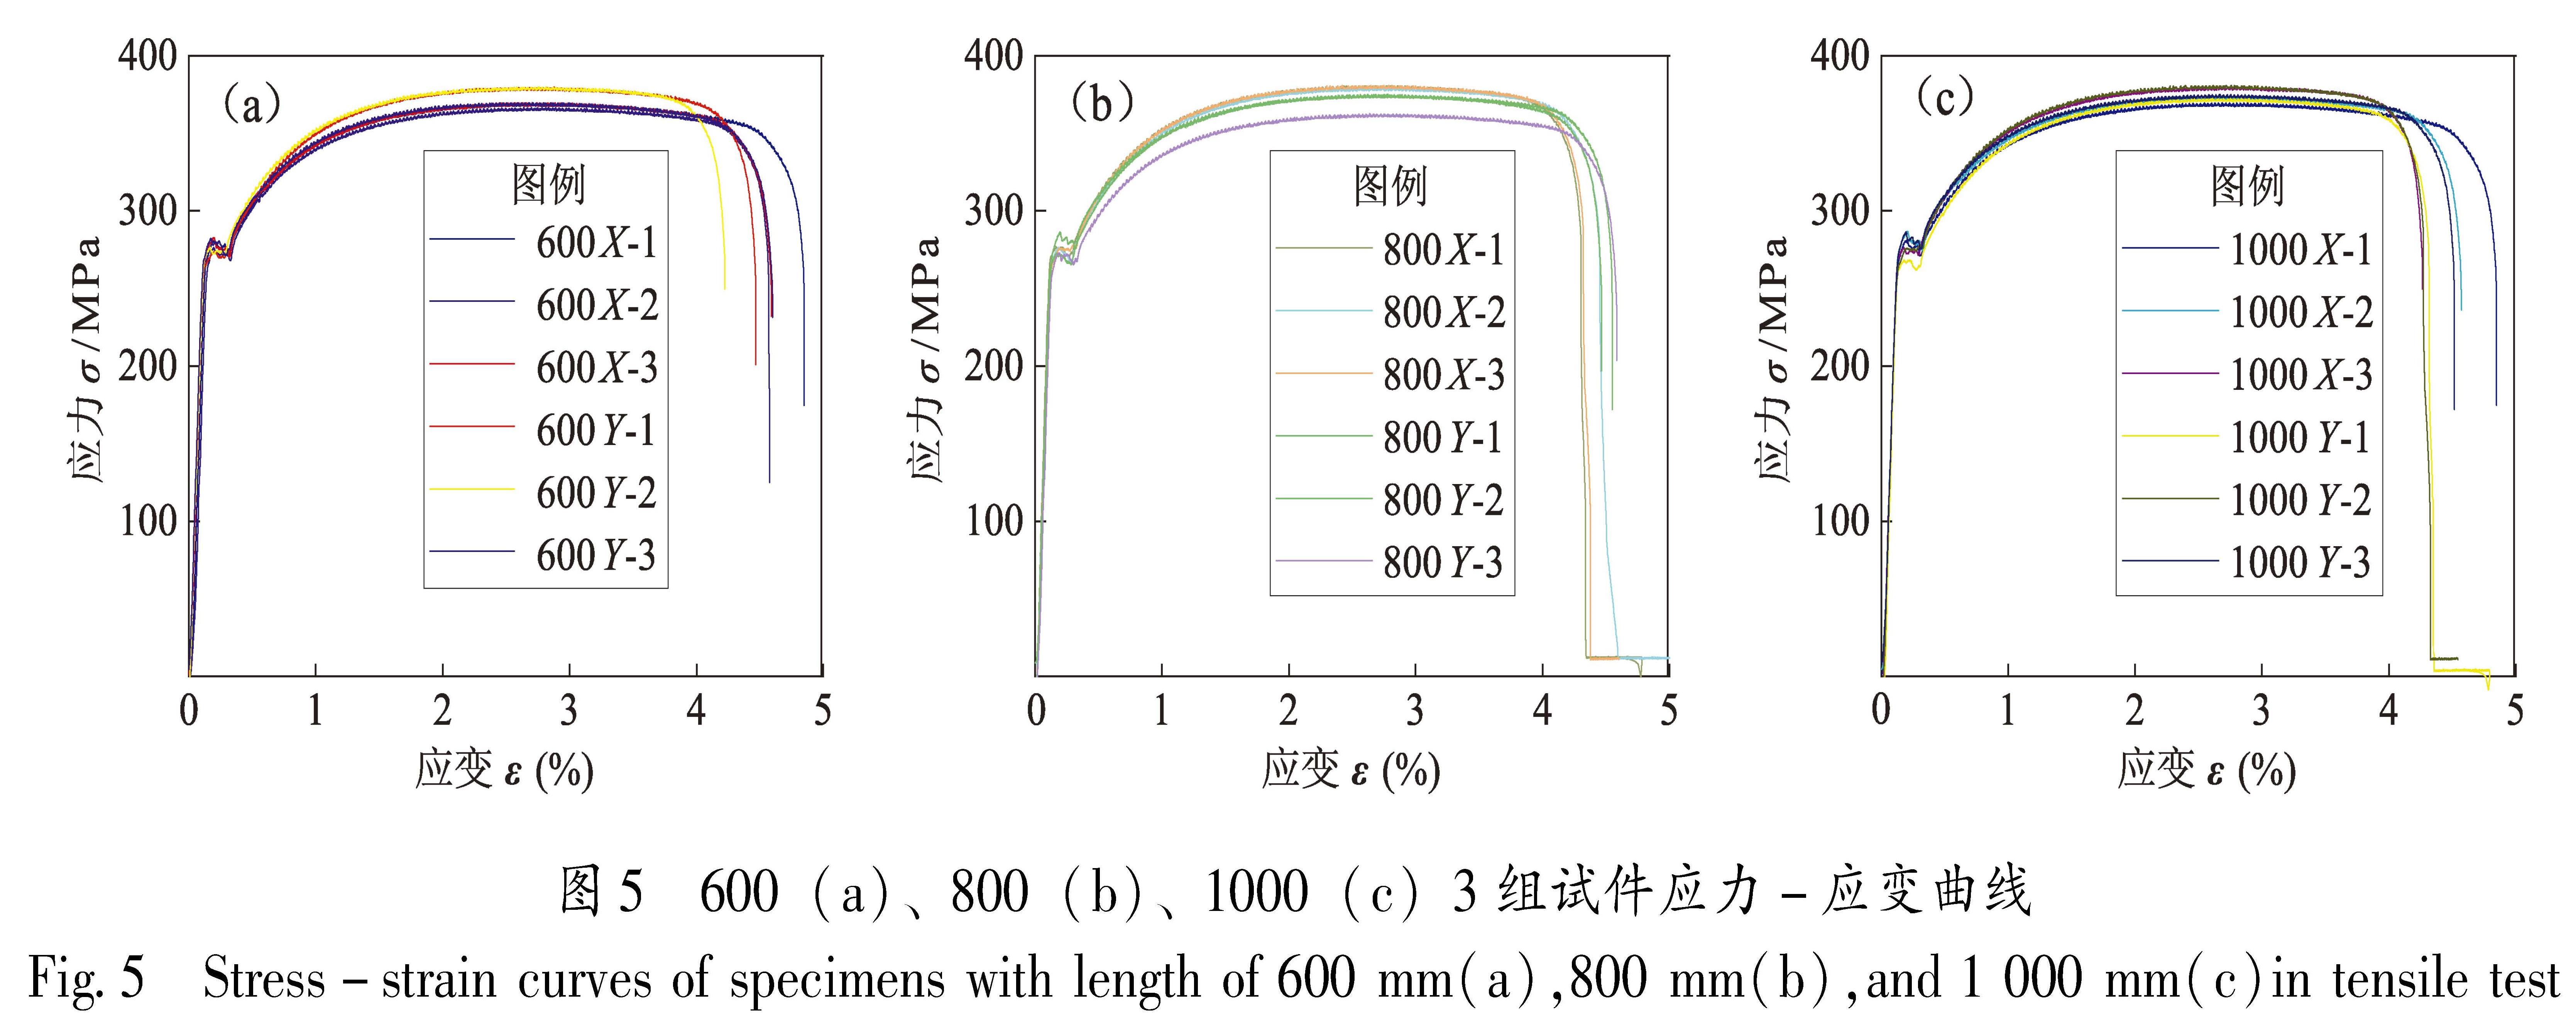 图5 600(a)、800(b)、1000(c)3组试件应力-应变曲线<br/>Fig.5 Stress-strain curves of specimens with length of 600 mm(a),800 mm(b),and 1 000 mm(c)in tensile test[HT][HJ]